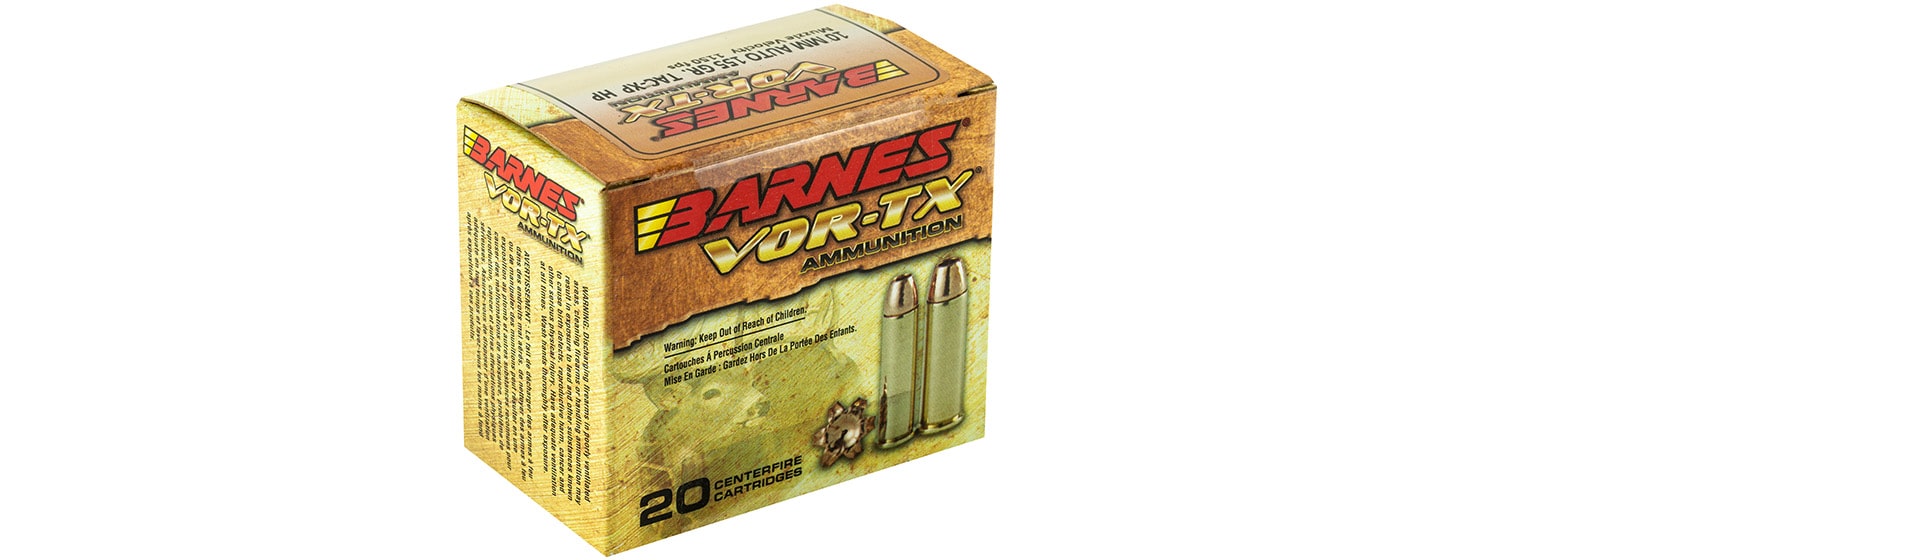 Barnes VOR-TX 10mm Ammo